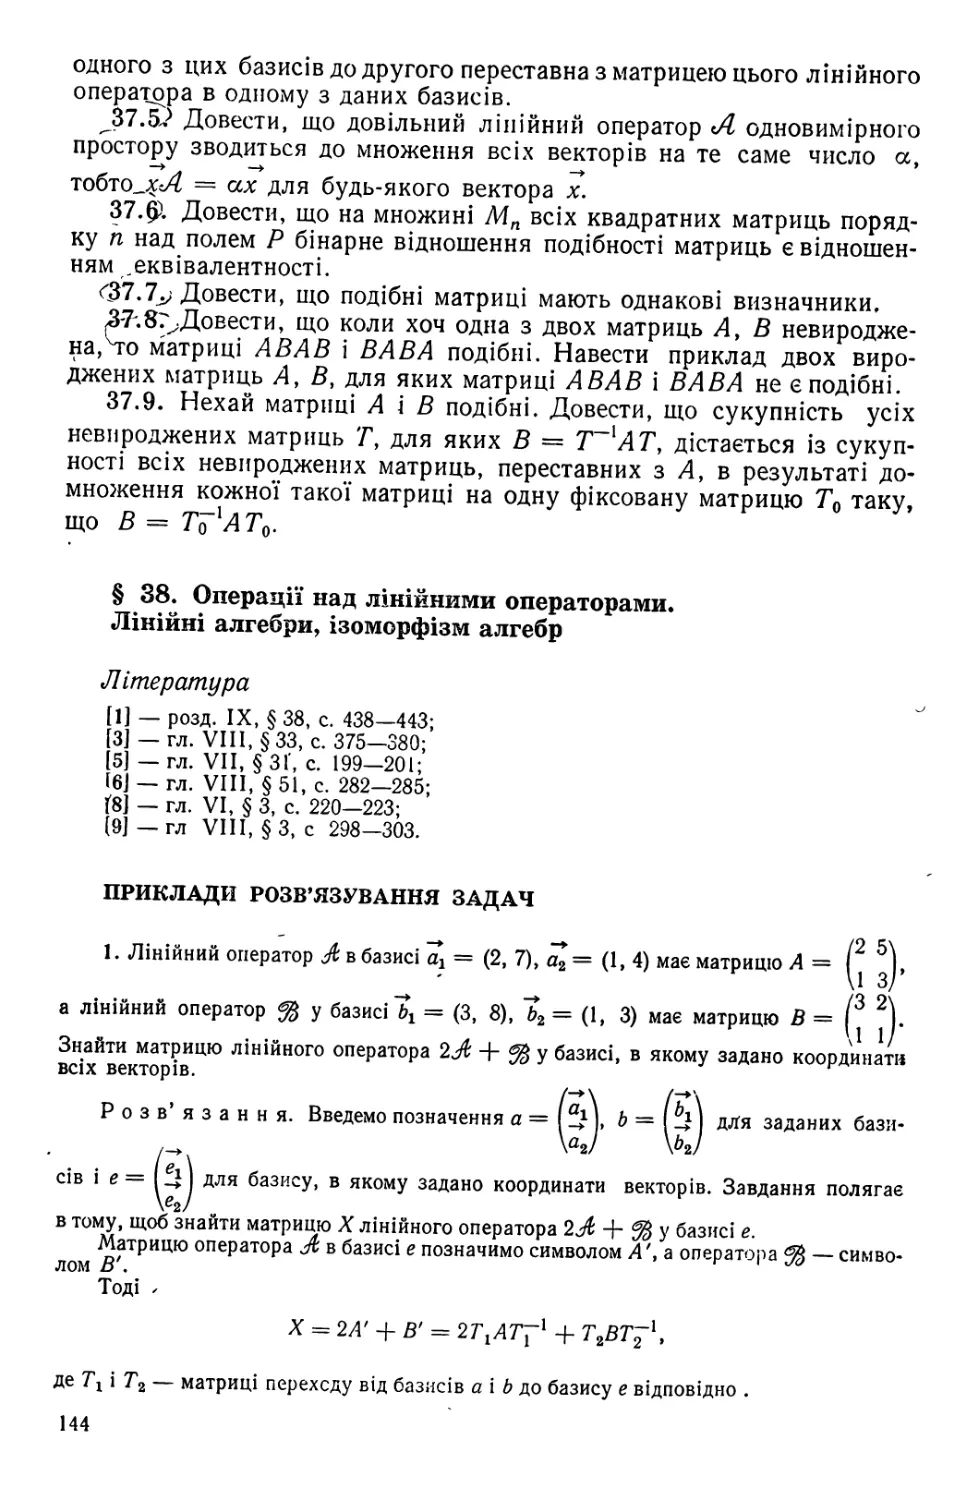 §38. Операції над лінійними операторами. Лінійні алгебри, ізоморфізм алгебр